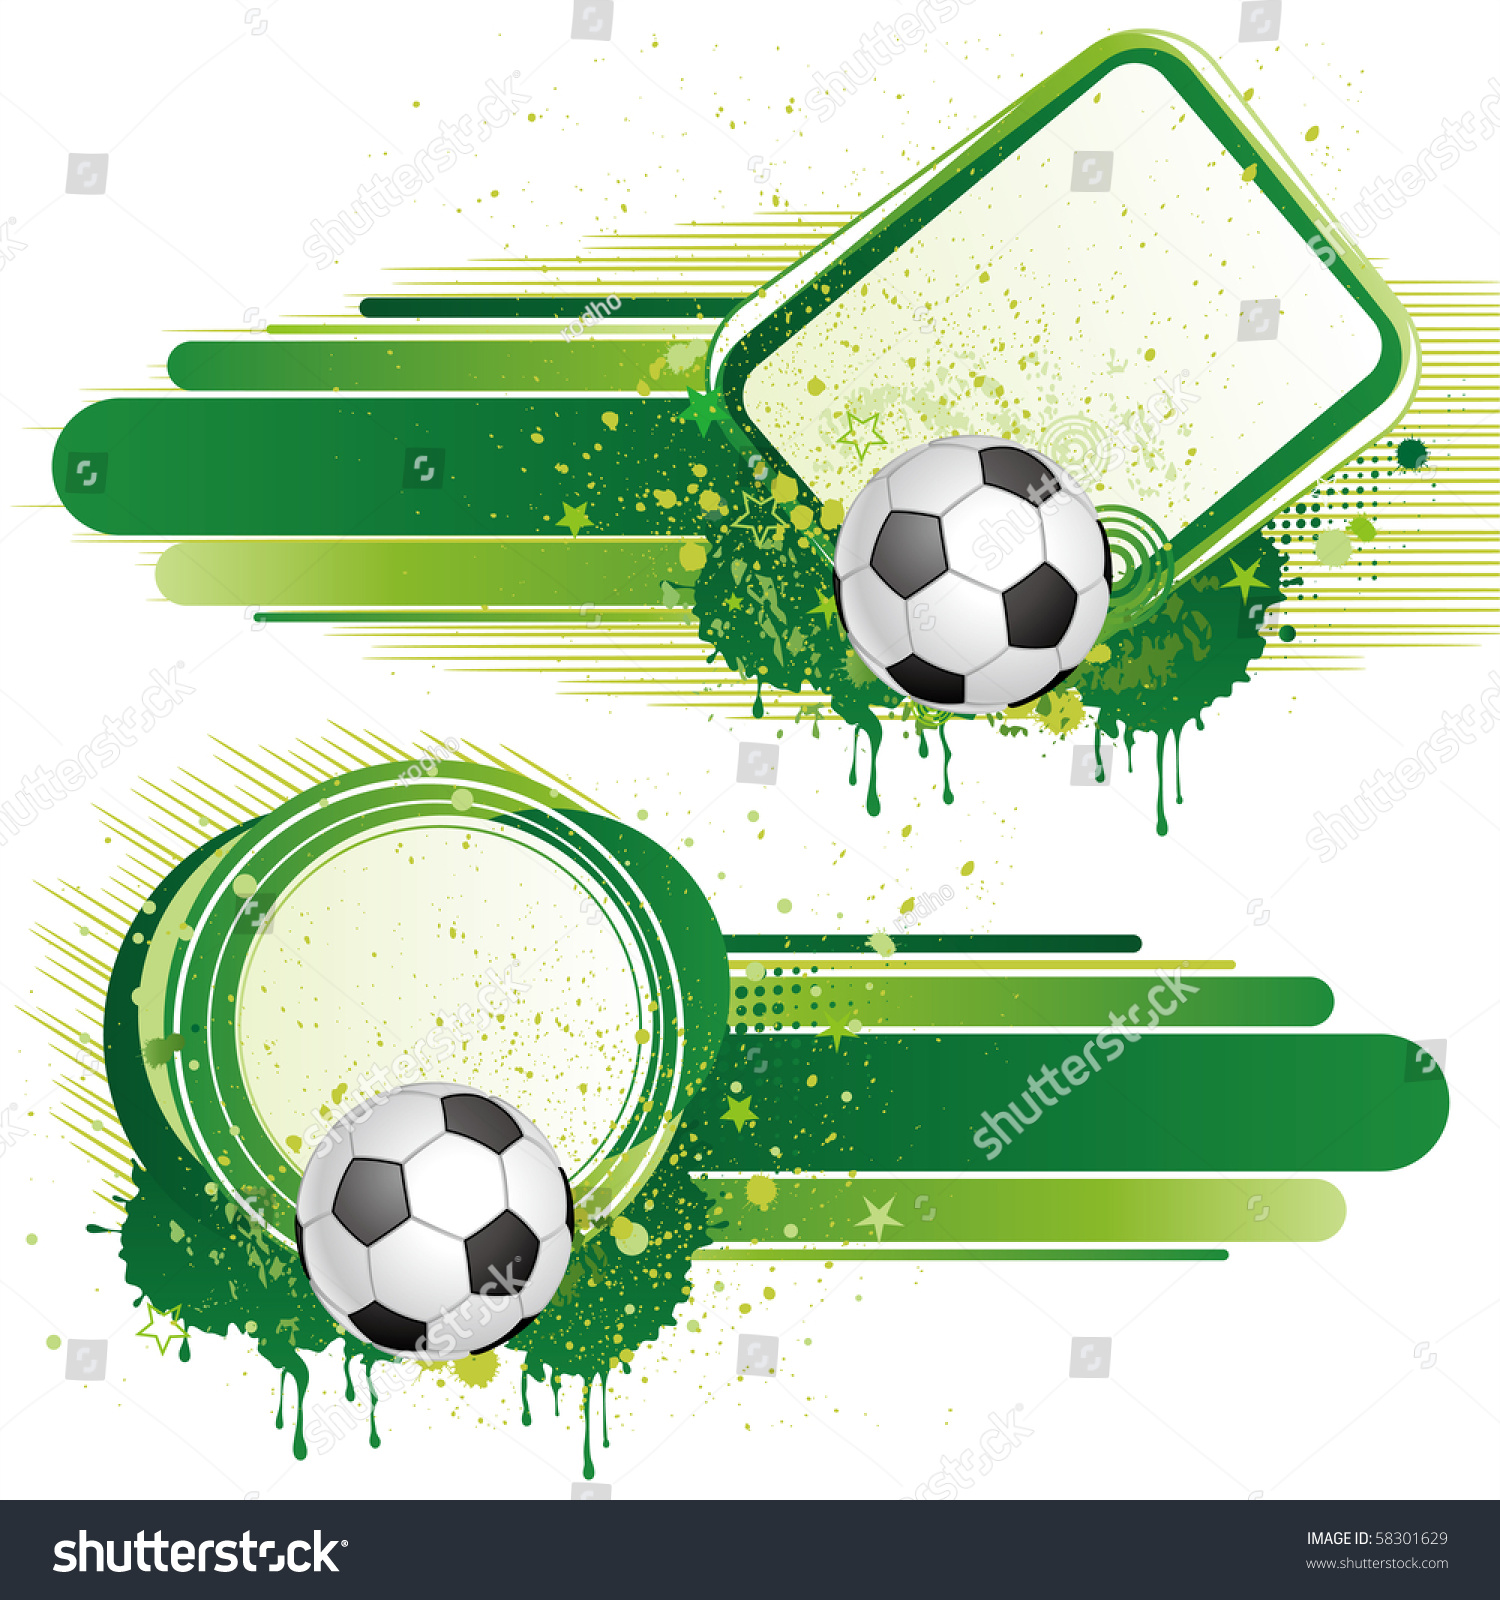 Football Sport,Vector Design Elements - 58301629 : Shutterstock